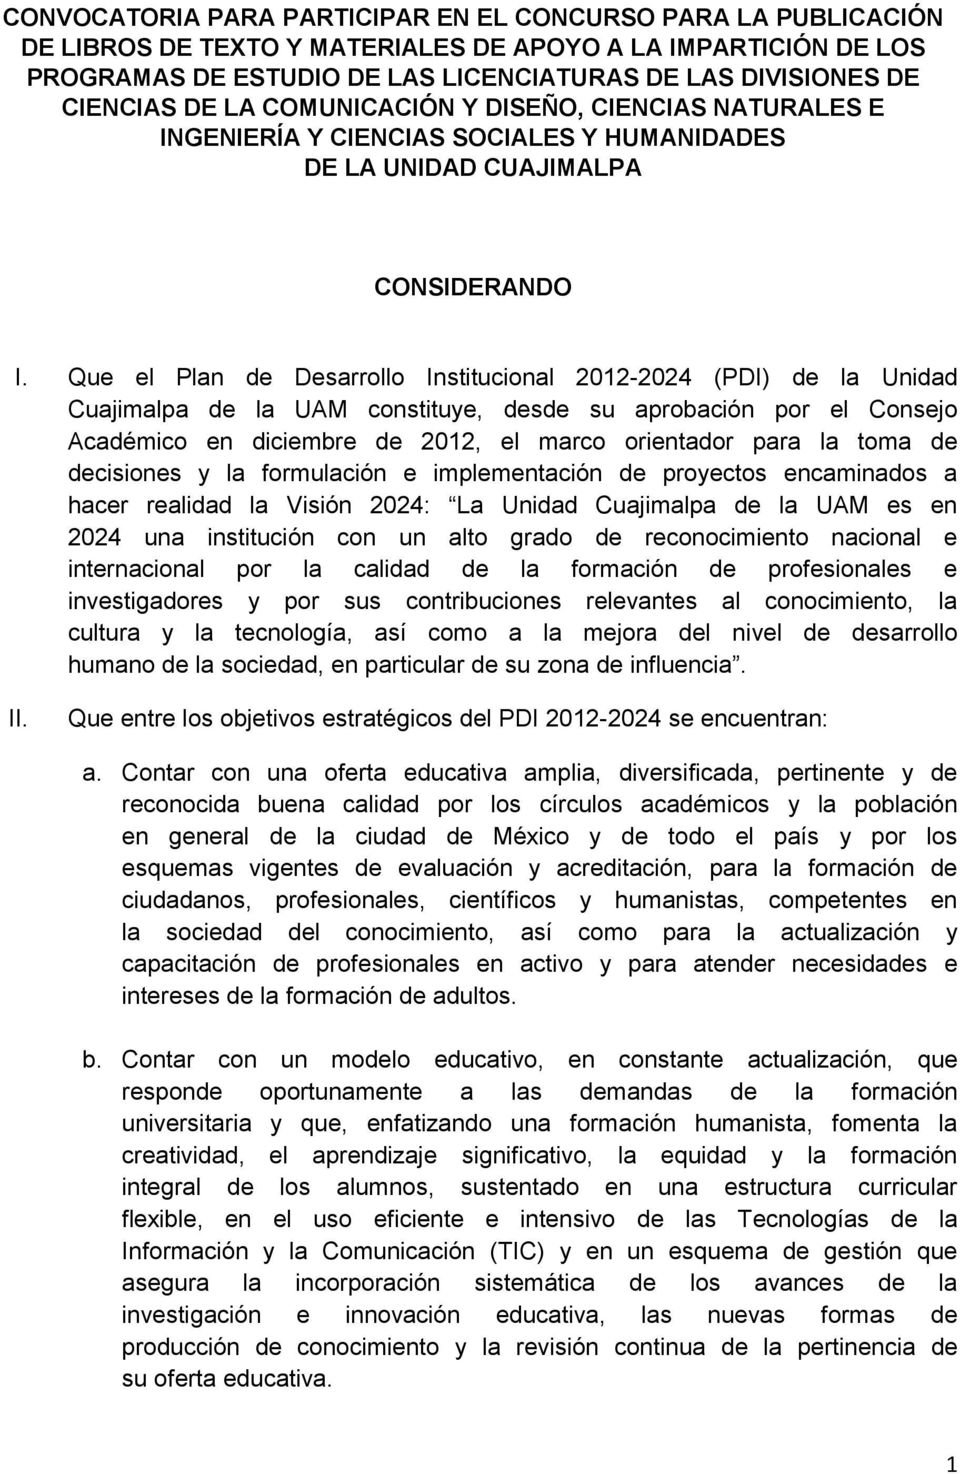 Que el Plan de Desarrollo Institucional 2012-2024 (PDI) de la Unidad Cuajimalpa de la UAM constituye, desde su aprobación por el Consejo Académico en diciembre de 2012, el marco orientador para la